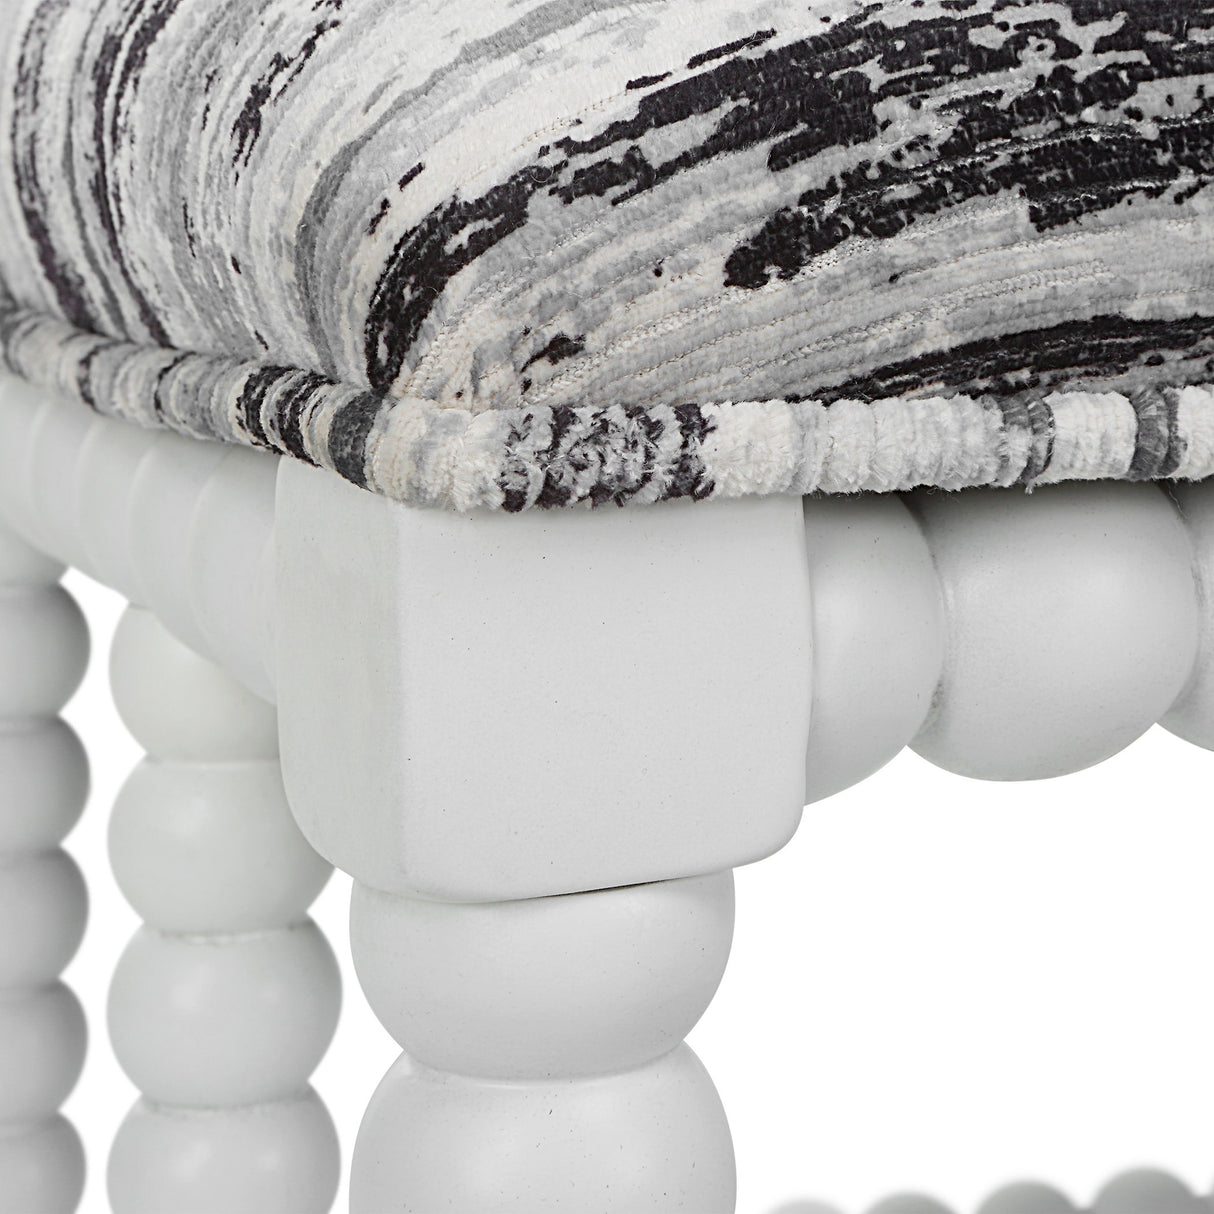 Seminoe - Uupholstered Small Bench - White & Gray, Dark